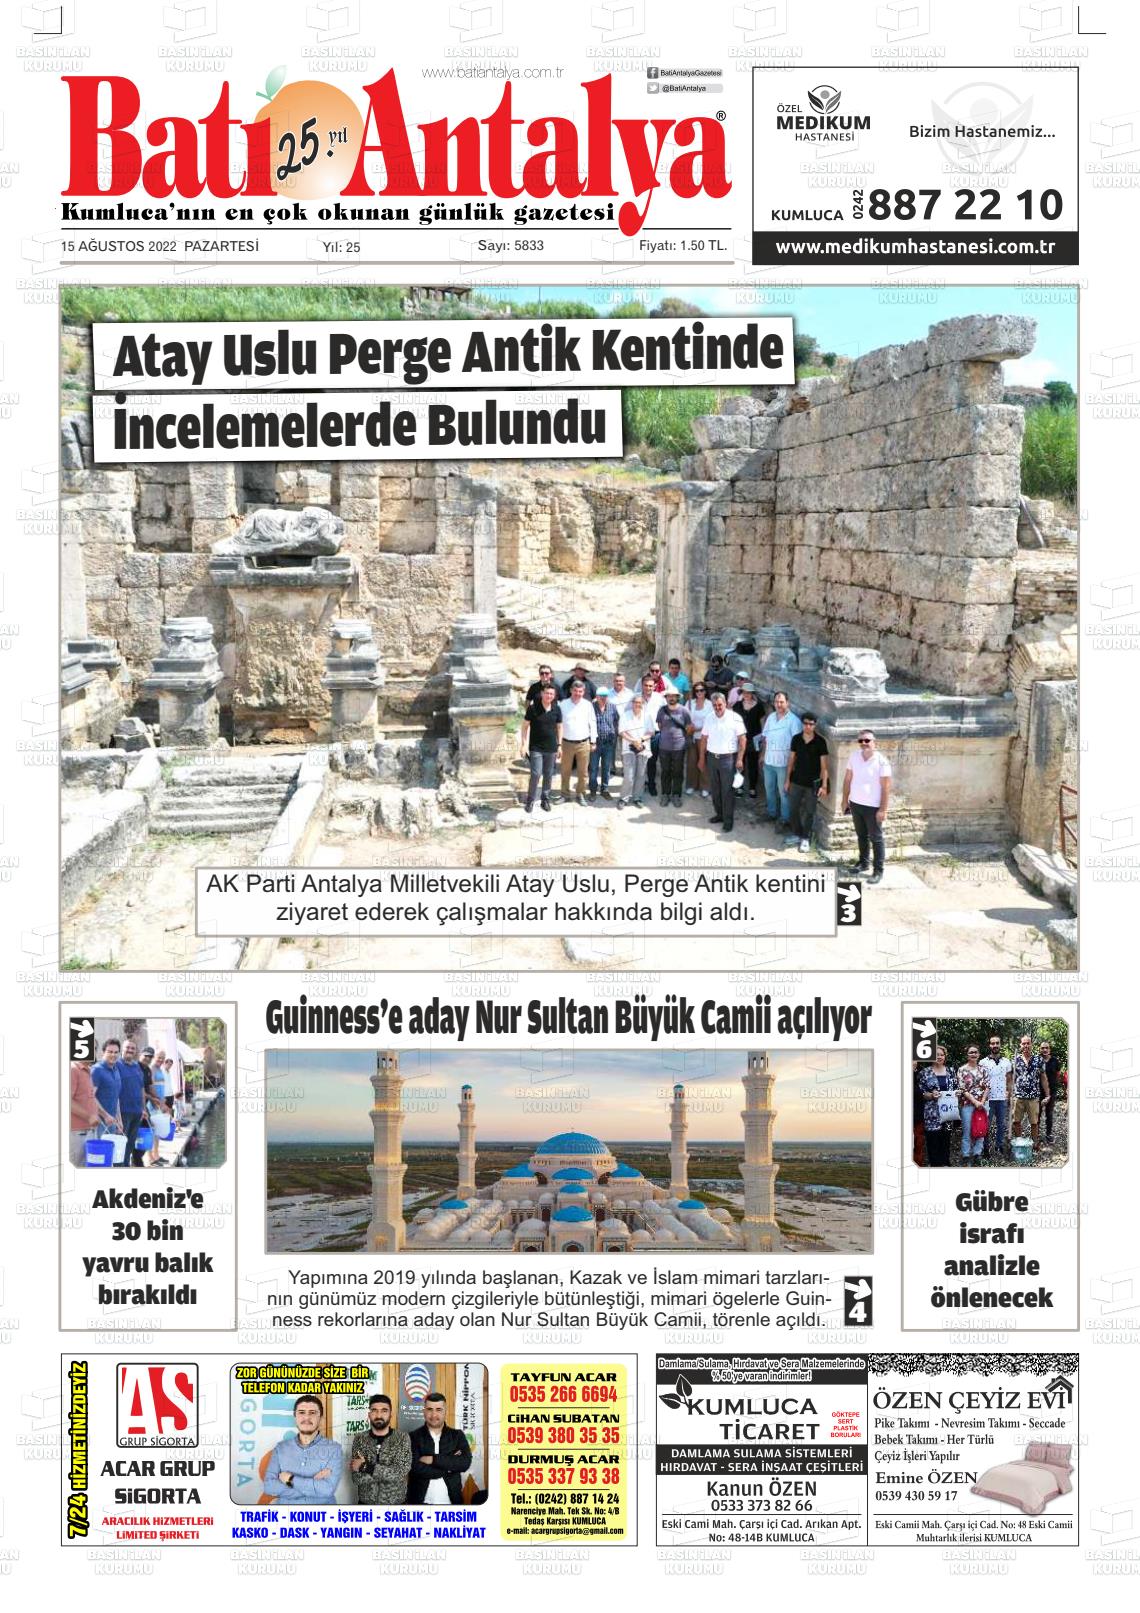 15 Ağustos 2022 Batı Antalya Gazete Manşeti